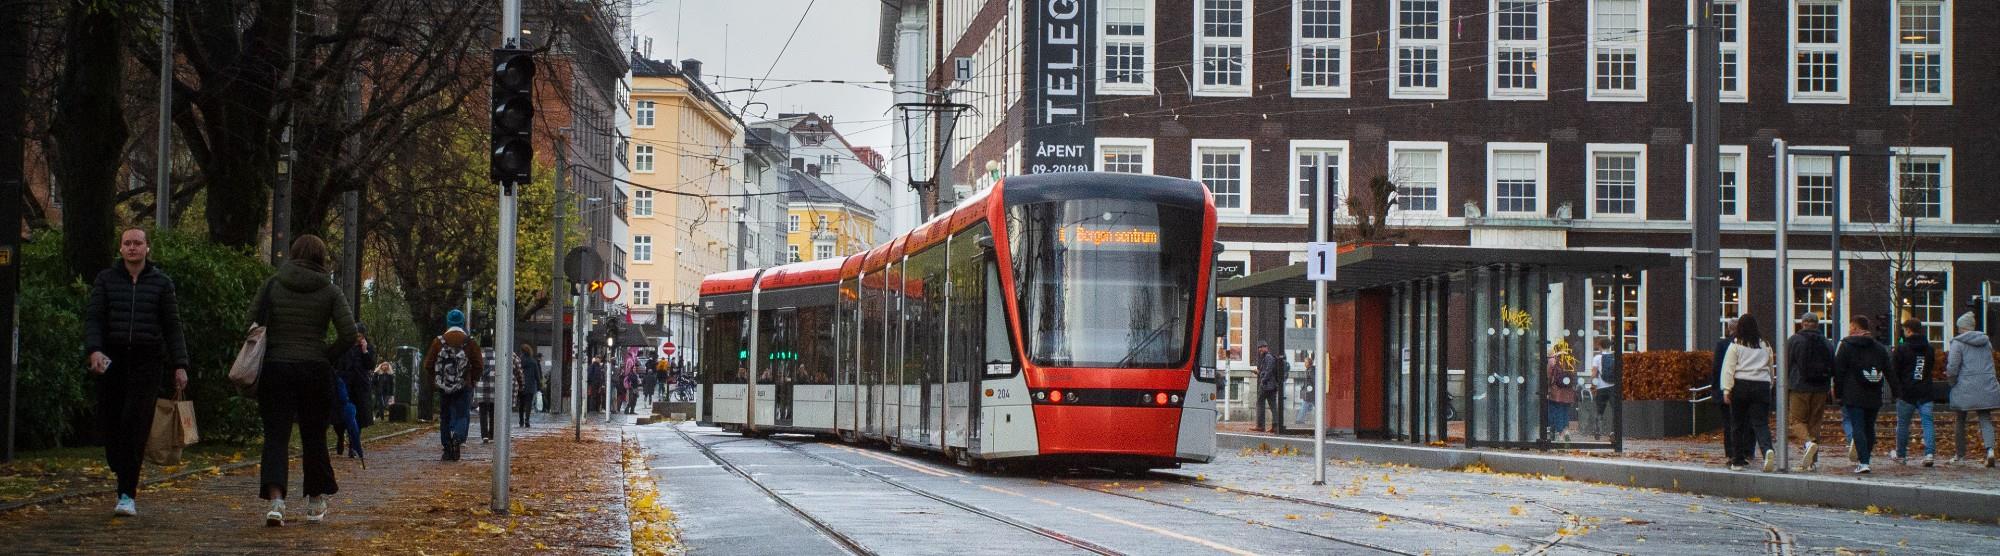 Public transport in Bergen